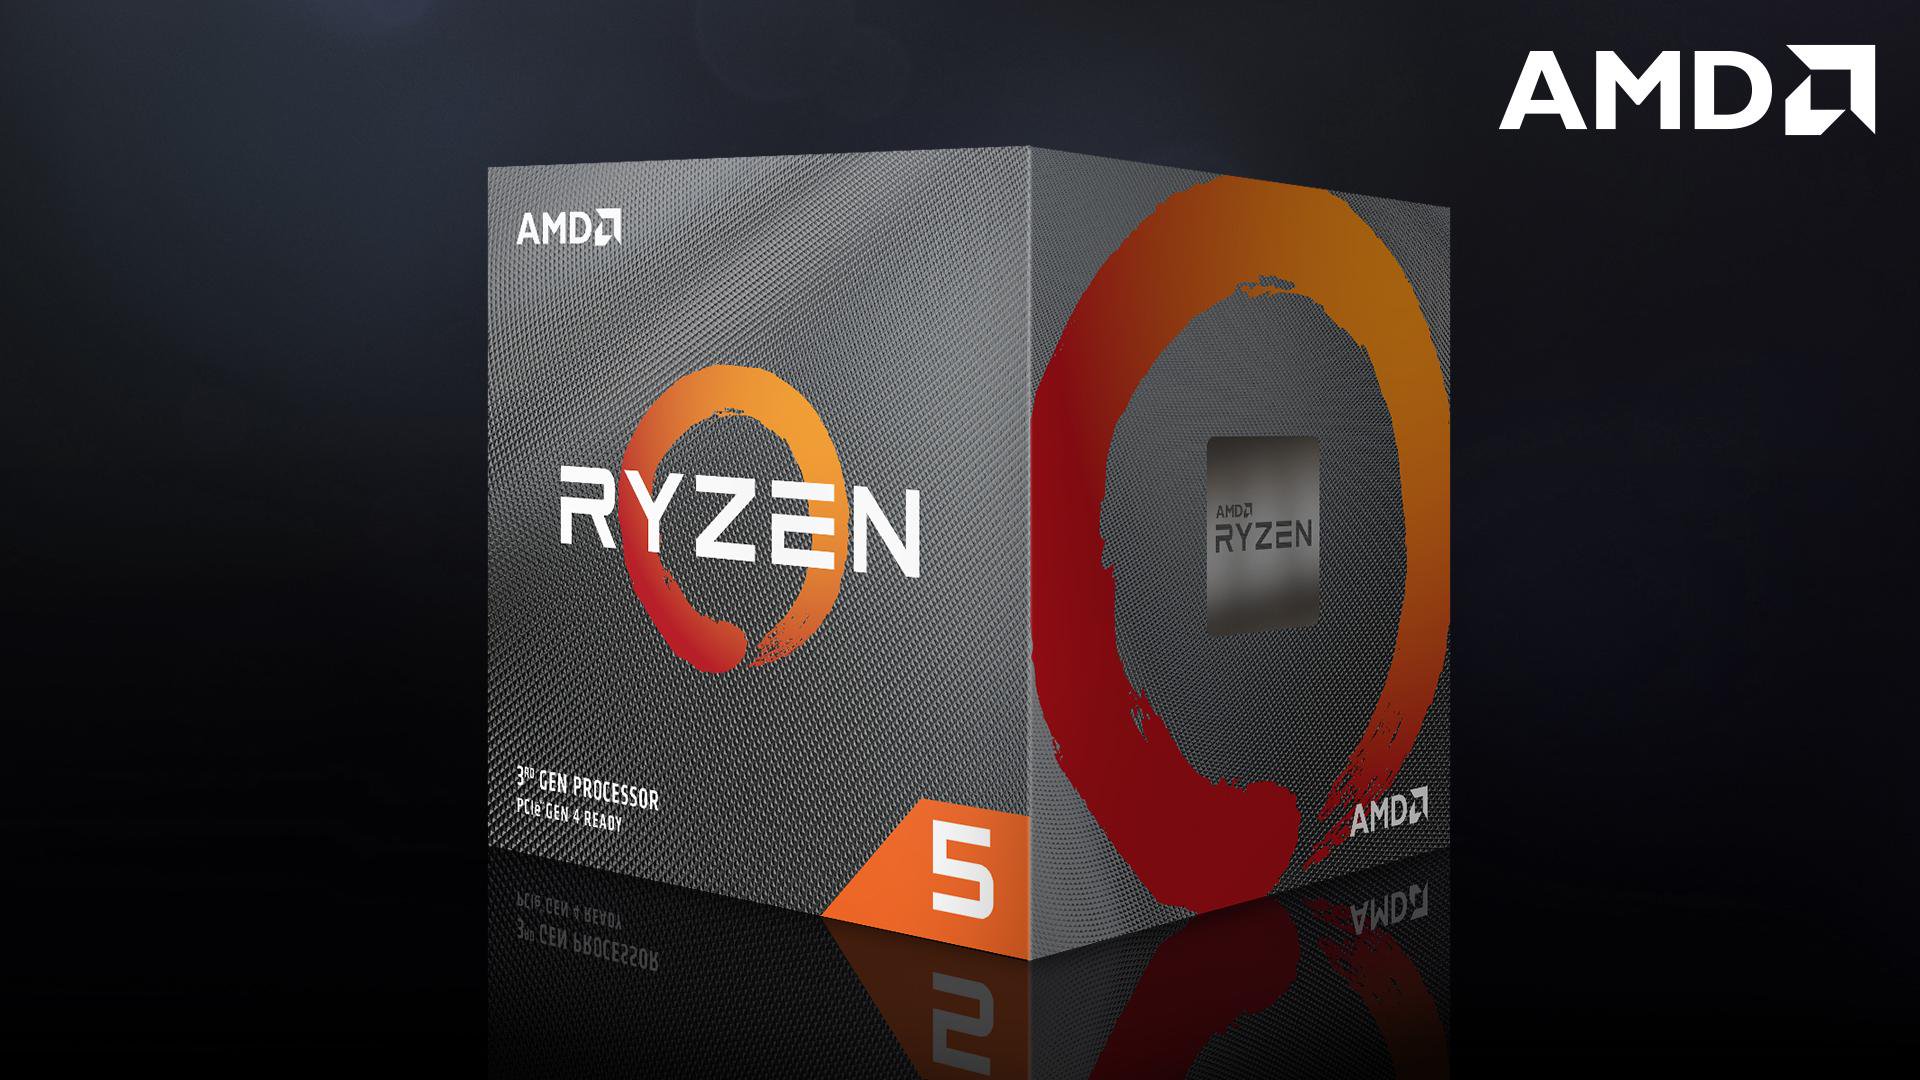 AMD Ryzen 5 3500 lộ diện: 6 nhân/6 luồng, nhắm phân khúc 150$